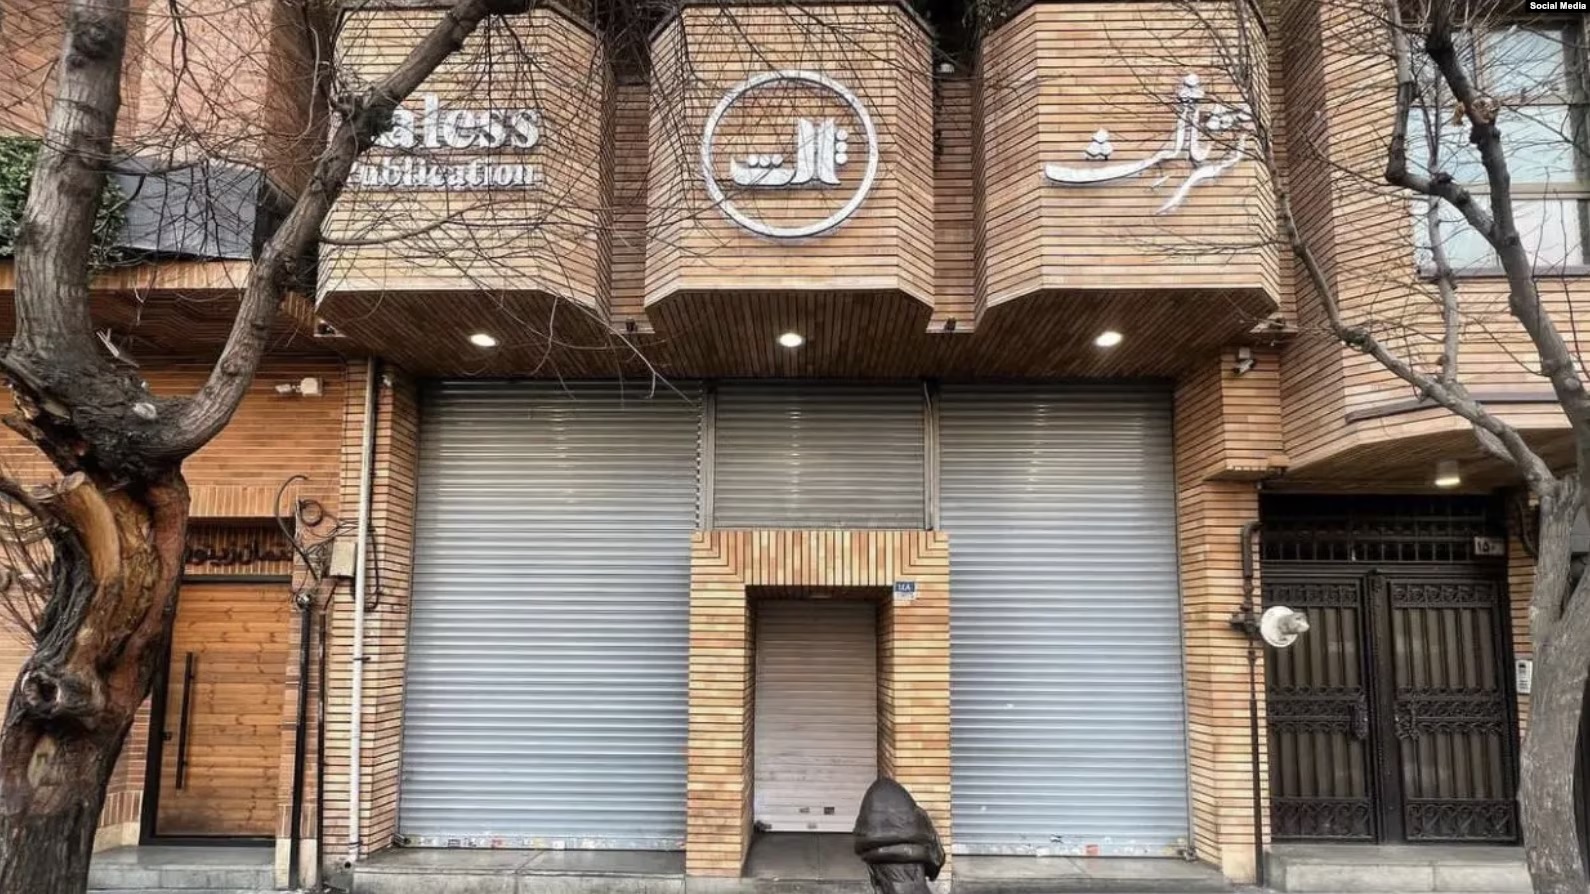 Libraria e mbyllur e shtëpisë botuese, Saless, Teheran, Iran.